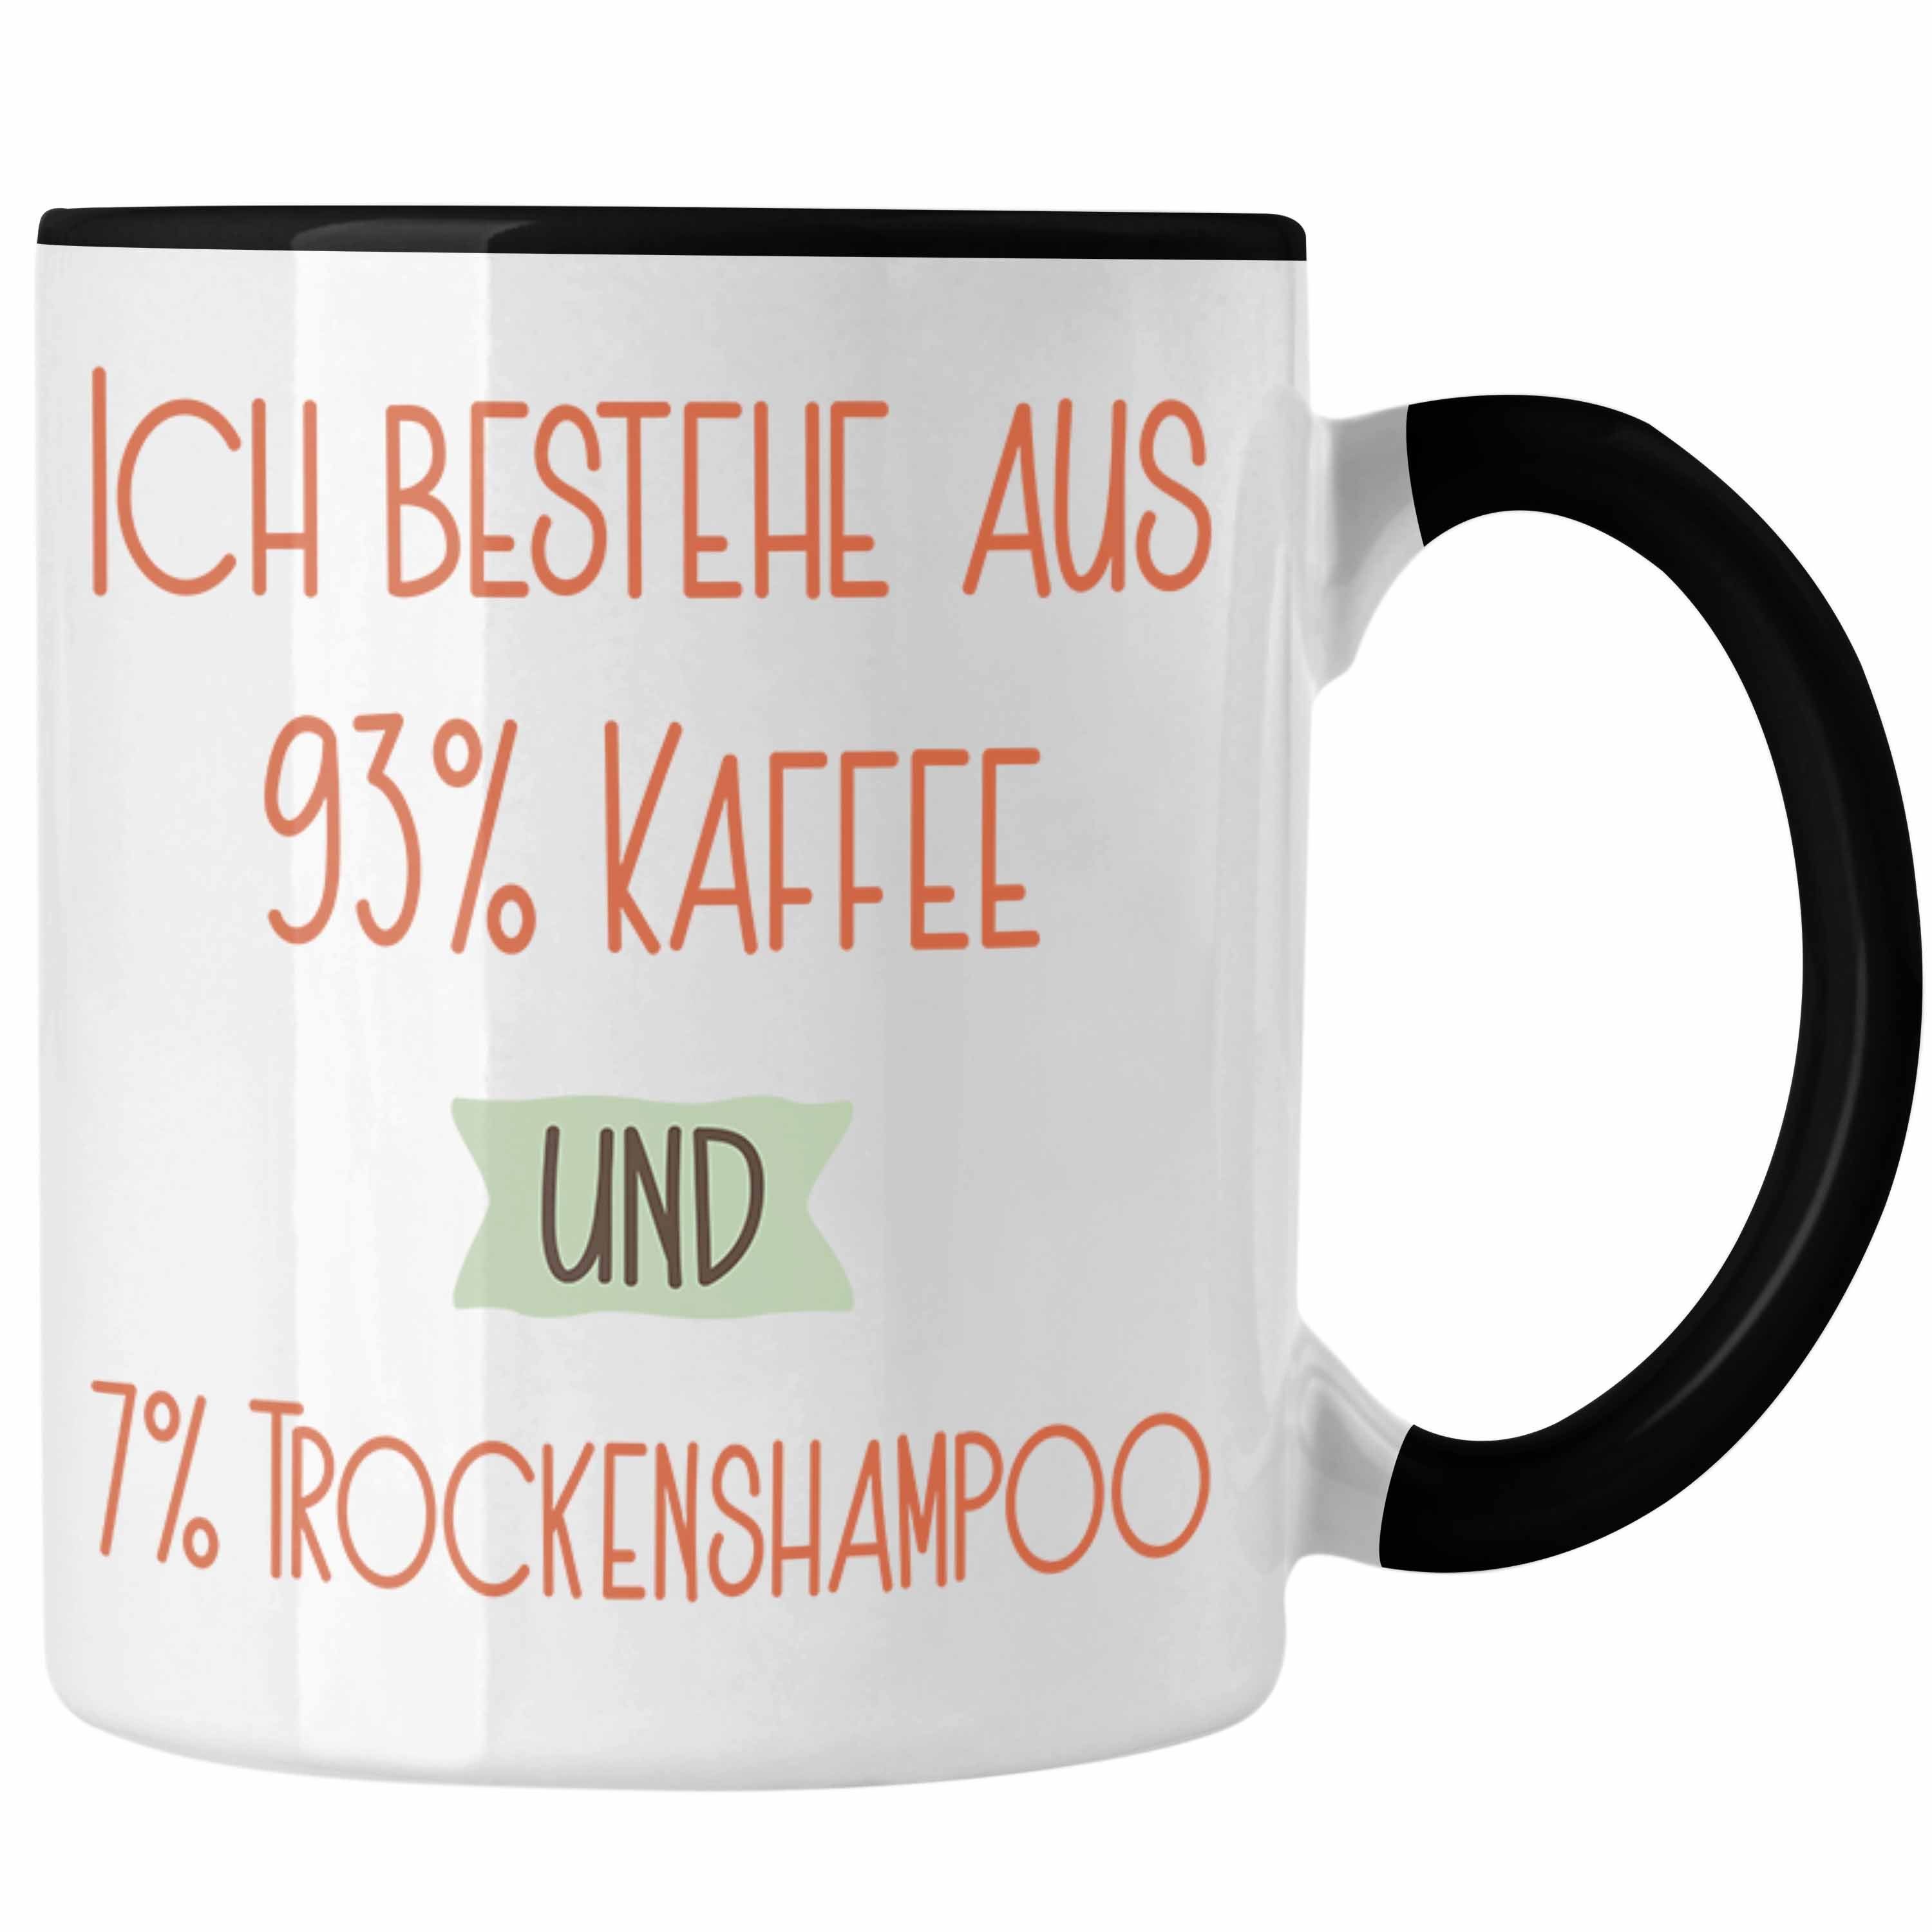 Trendation Tasse 93% Kaffee und 7% Trockenshampoo Tasse Geschenk Lustiger Spruch Für Ko Schwarz